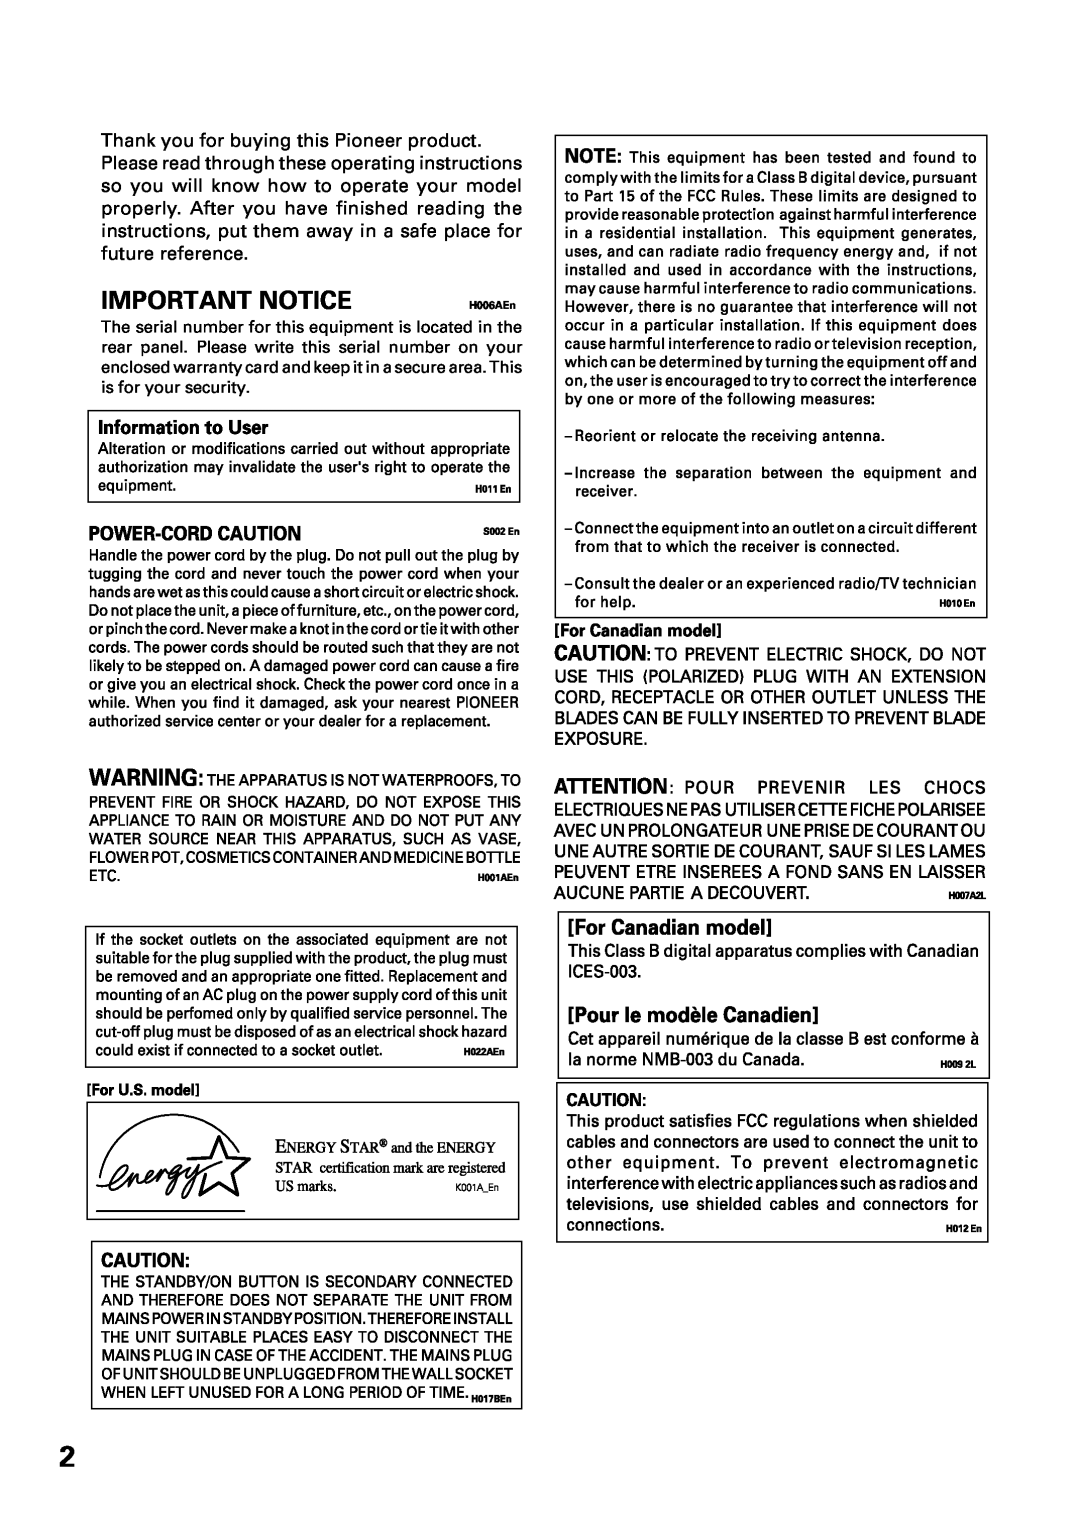 Pioneer VSX-47TX manual Important Notice, H006AEn 